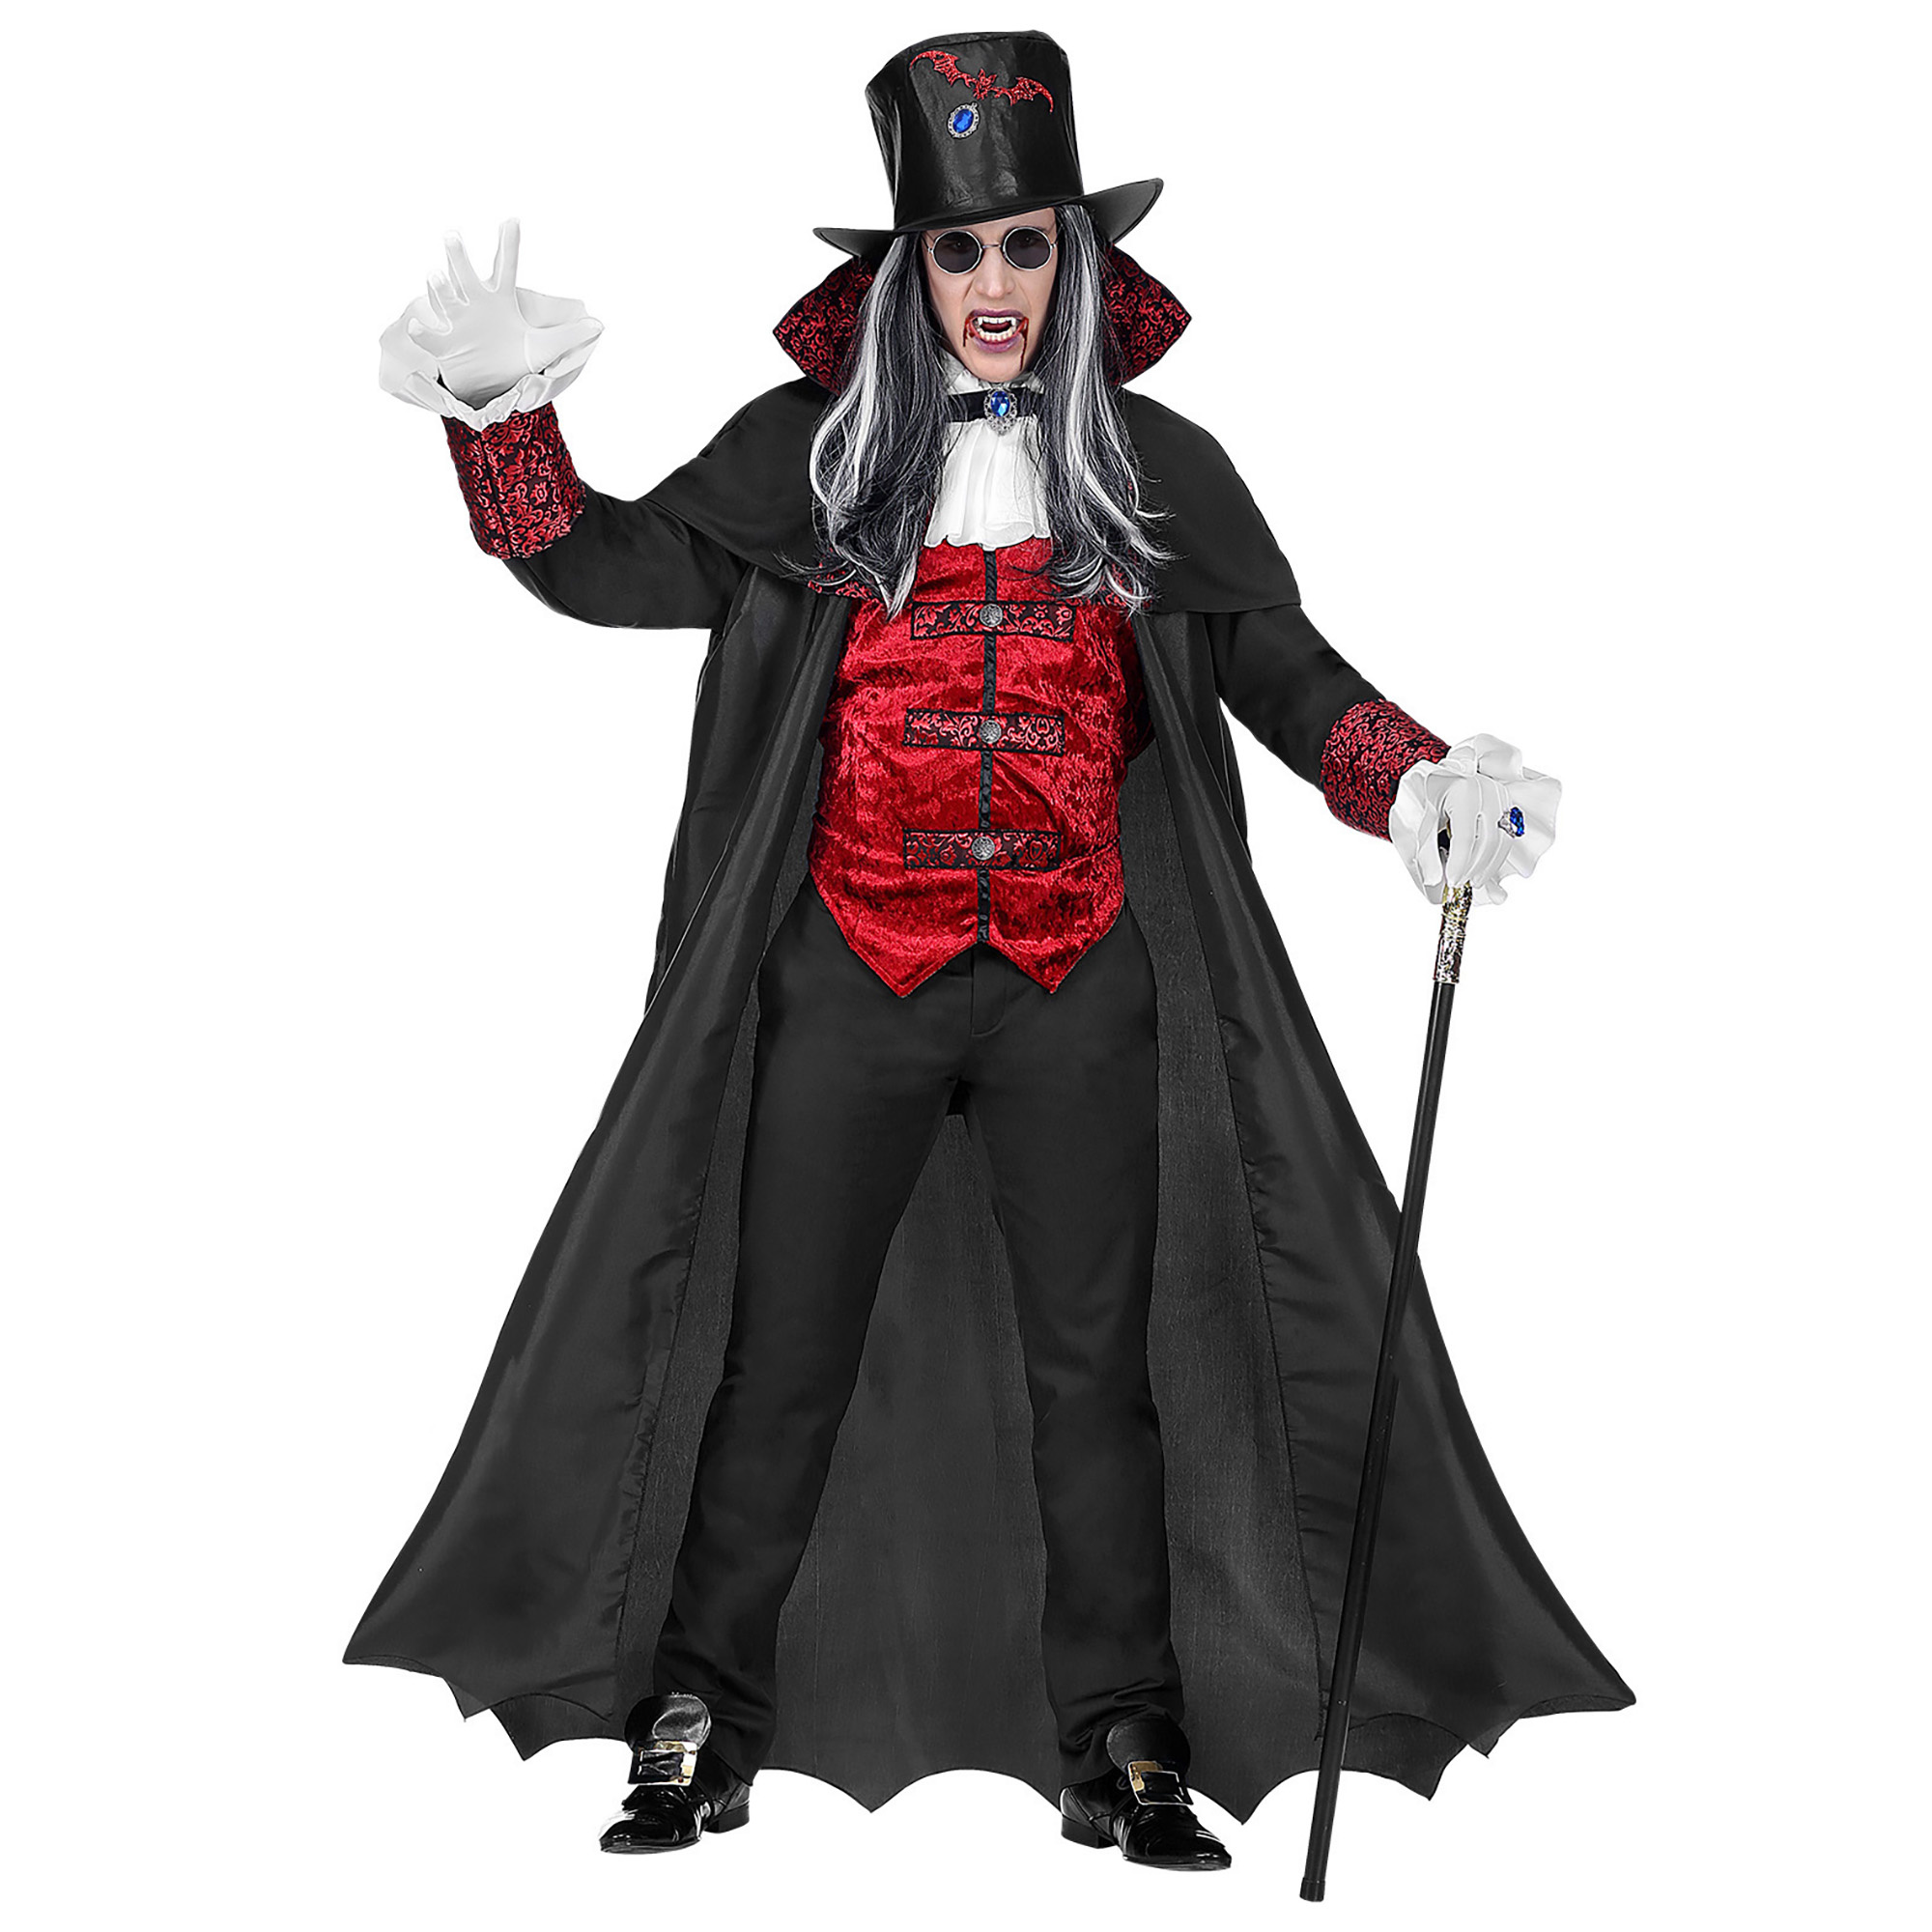 WIDMANN - Vampier graaf kostuum met lange cape voor volwassenen - XL